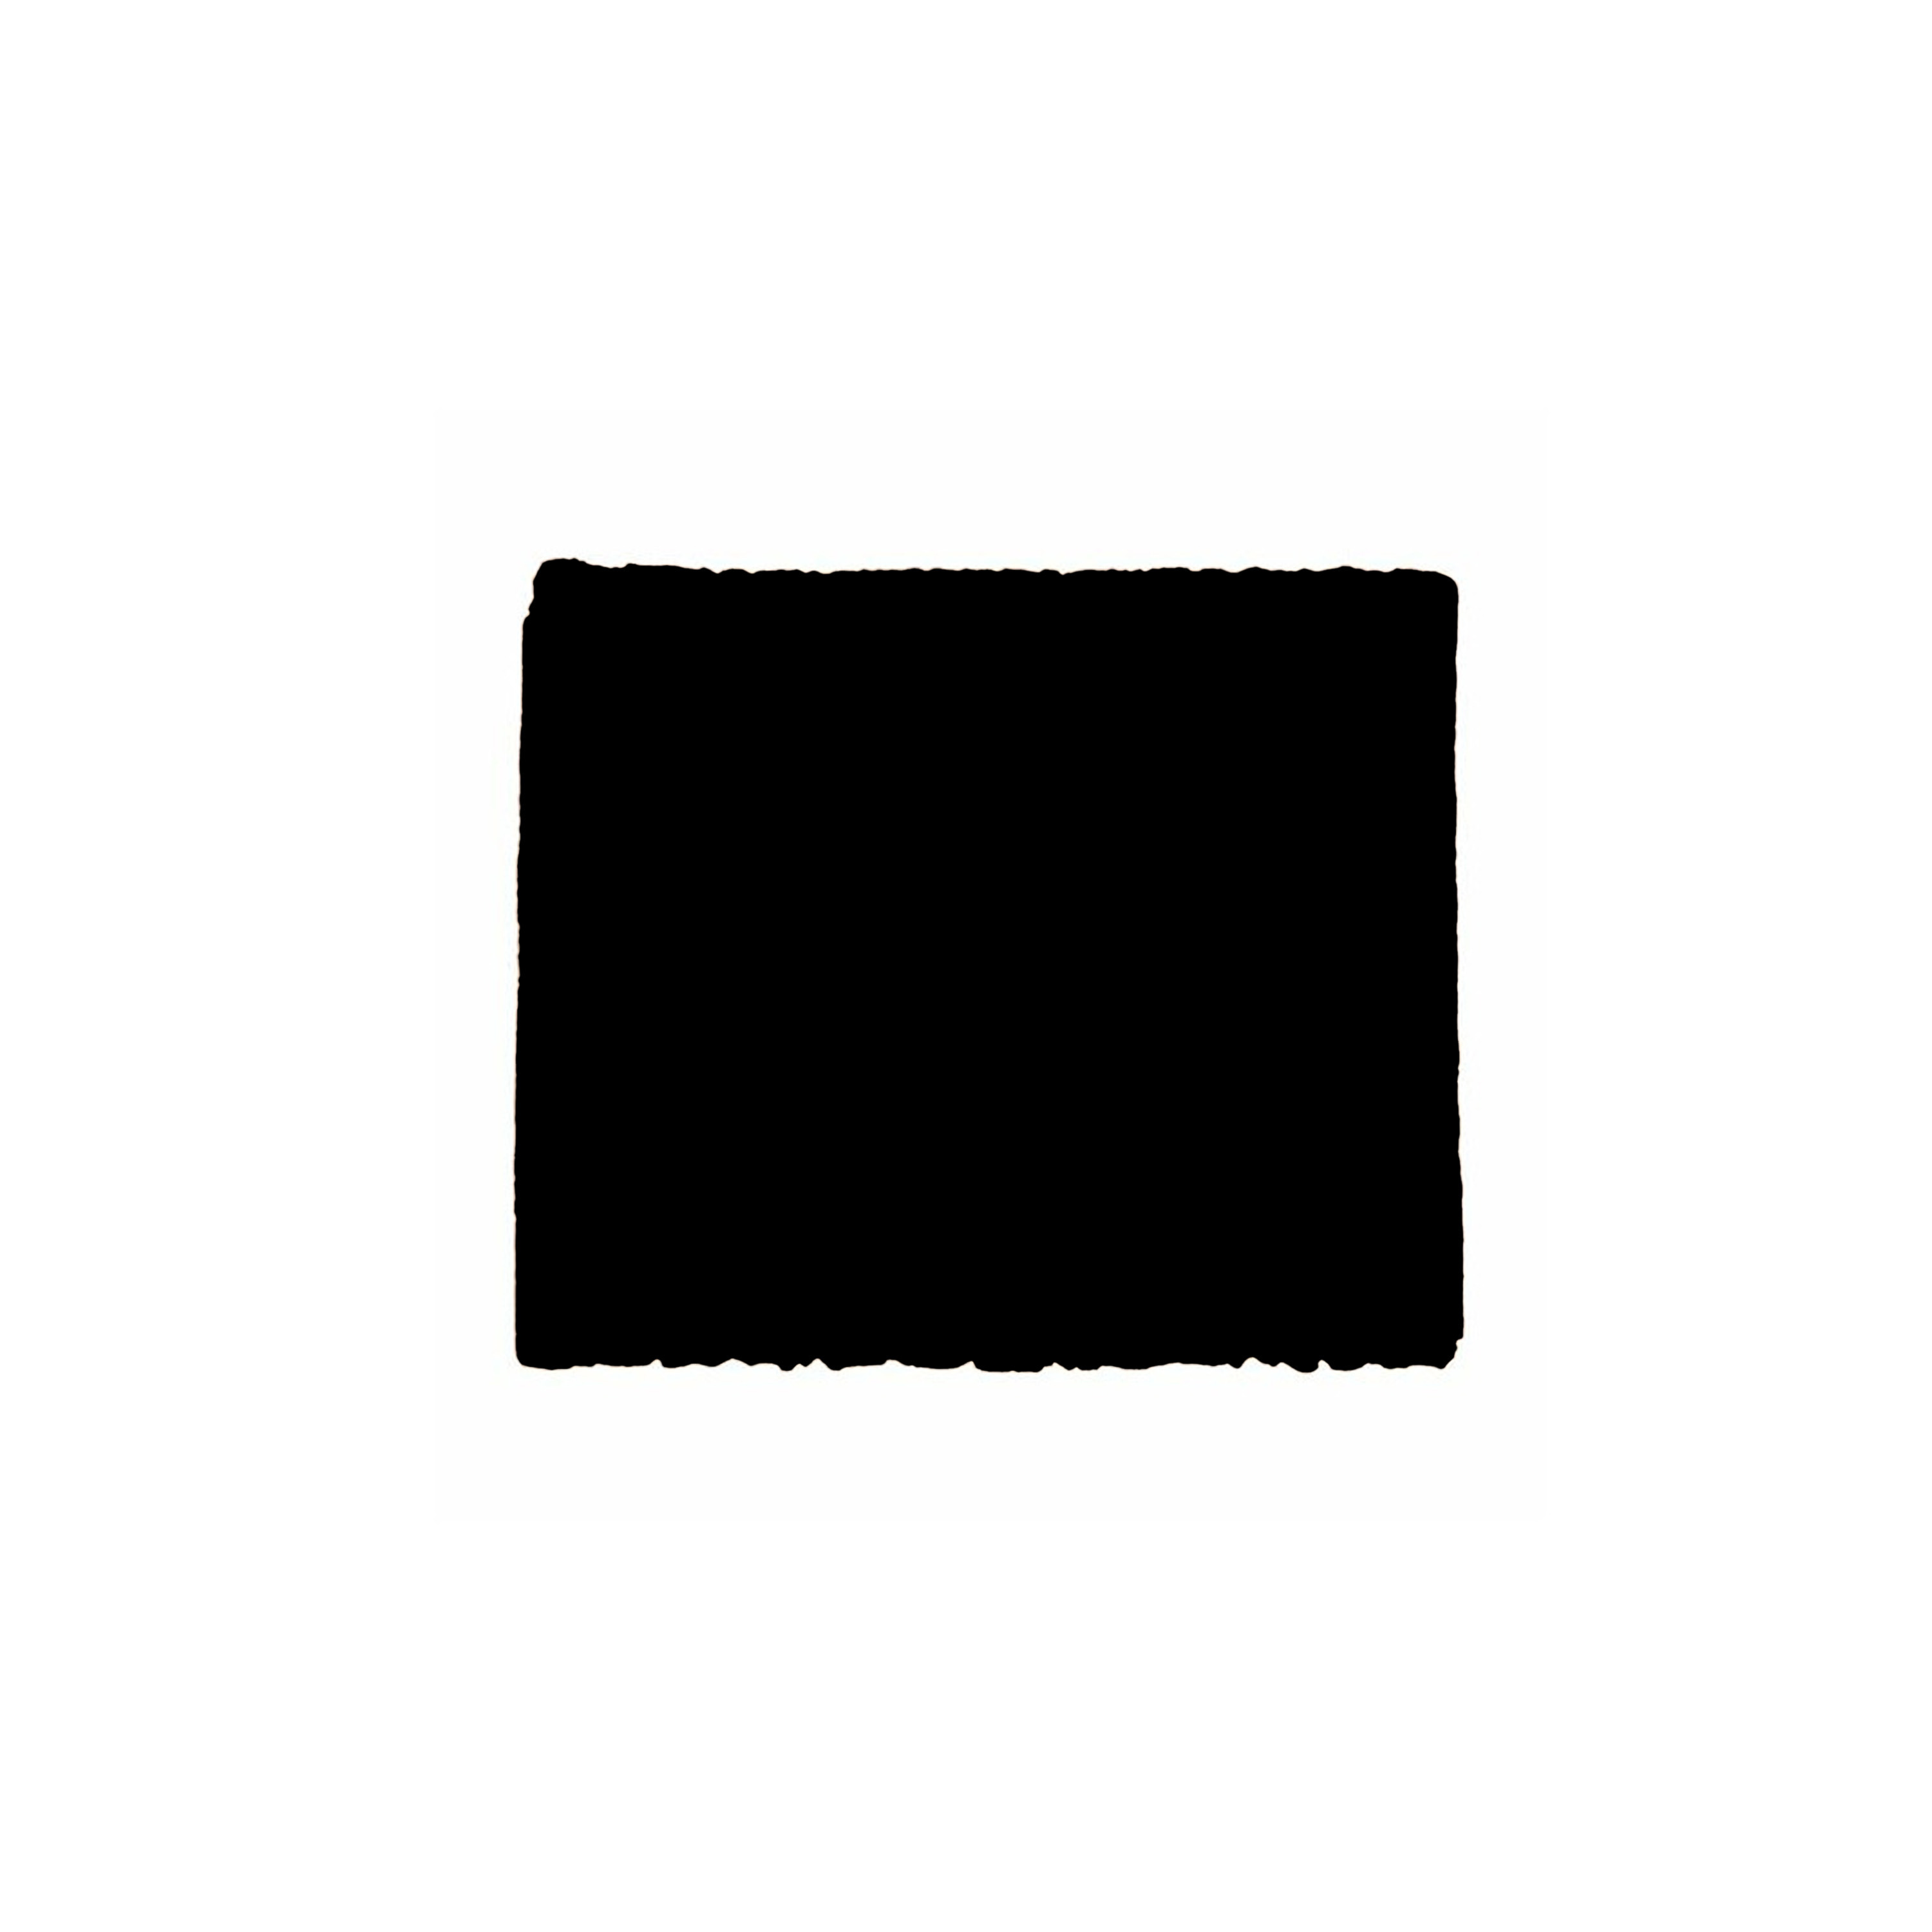 Afbeelding van Anti-krasvilt - 1x knipvel - zwart - 100 x 100 mm - rechthoek - zelfklevend - meubel beschermvilt